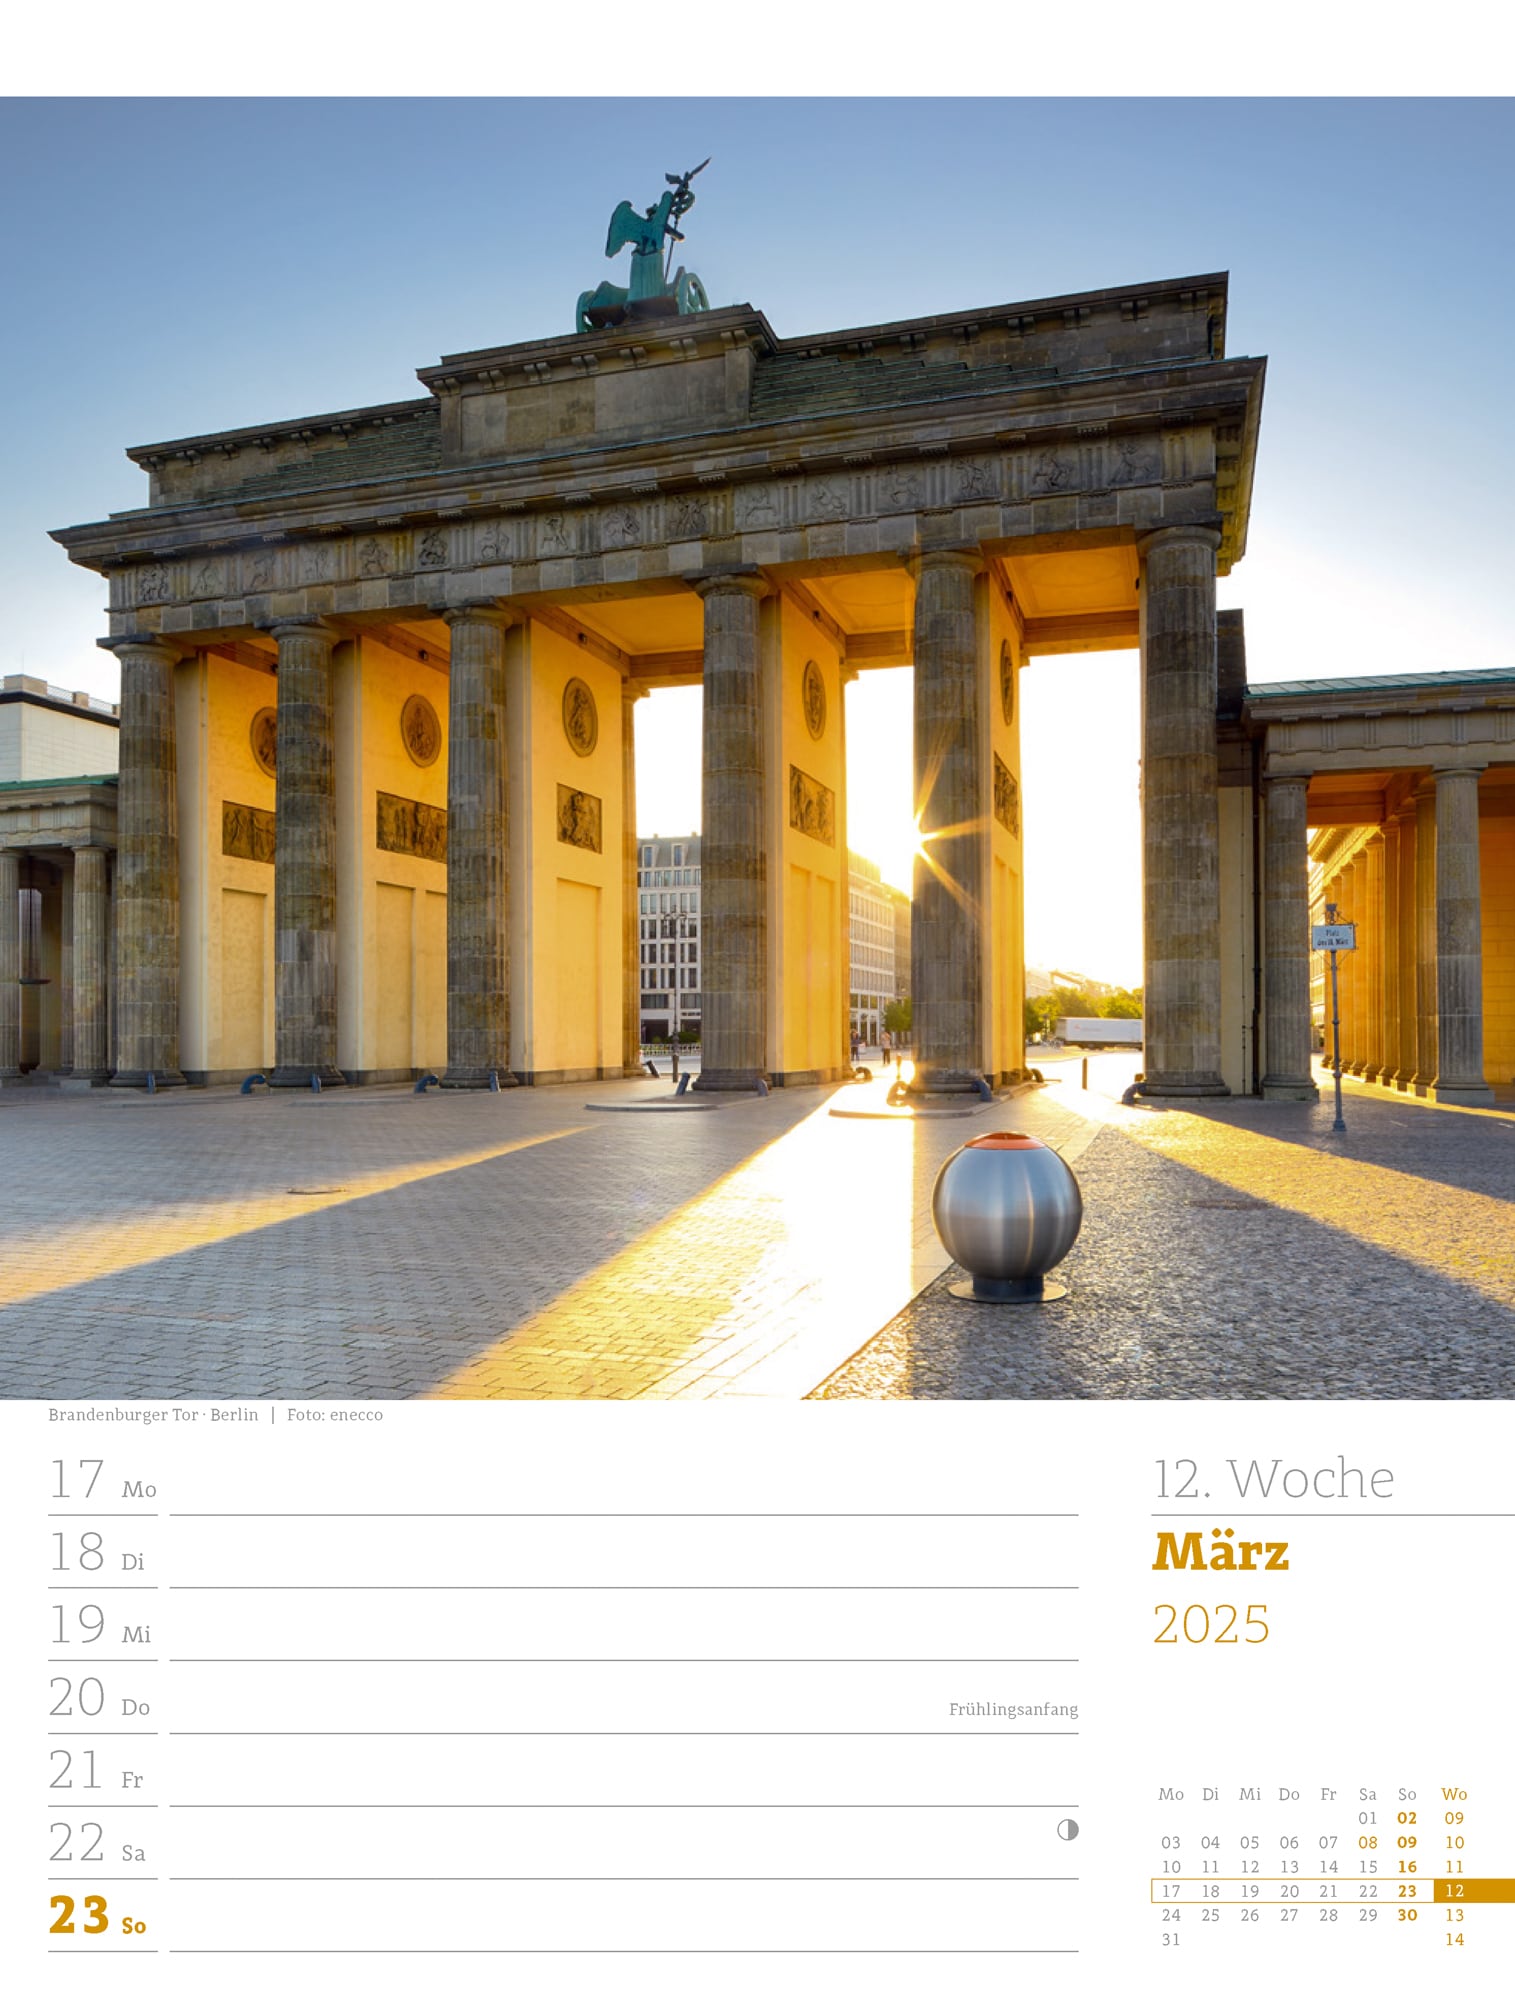 Ackermann Calendar Germany 2025 - Weekly Planner - Inside View 15